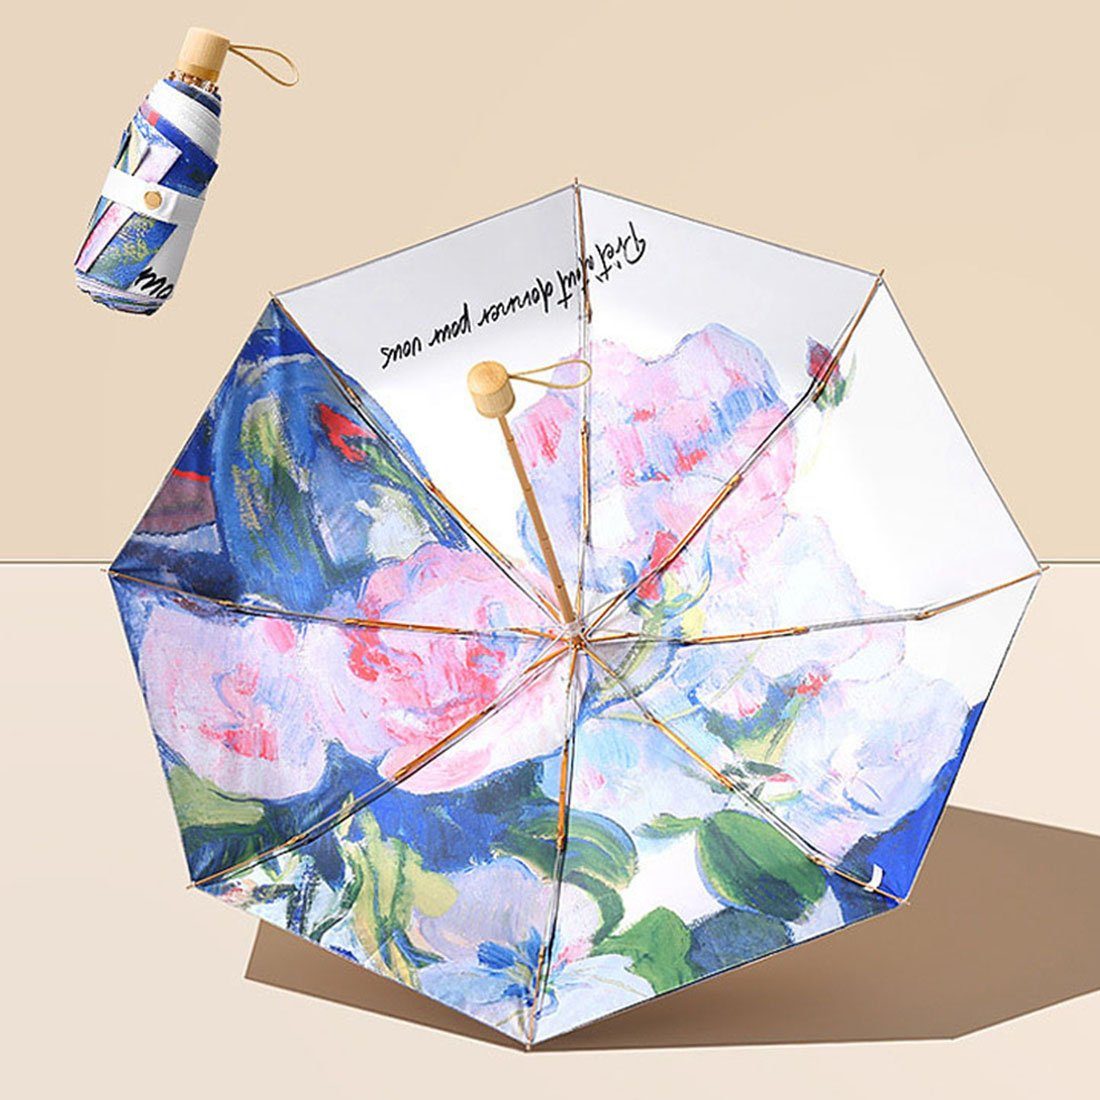 DÖRÖY Taschenregenschirm Vinyl-Ölmalerei Regenschirm,UVFaltschirm,Mini-Sonnenschirm Regenschirm B